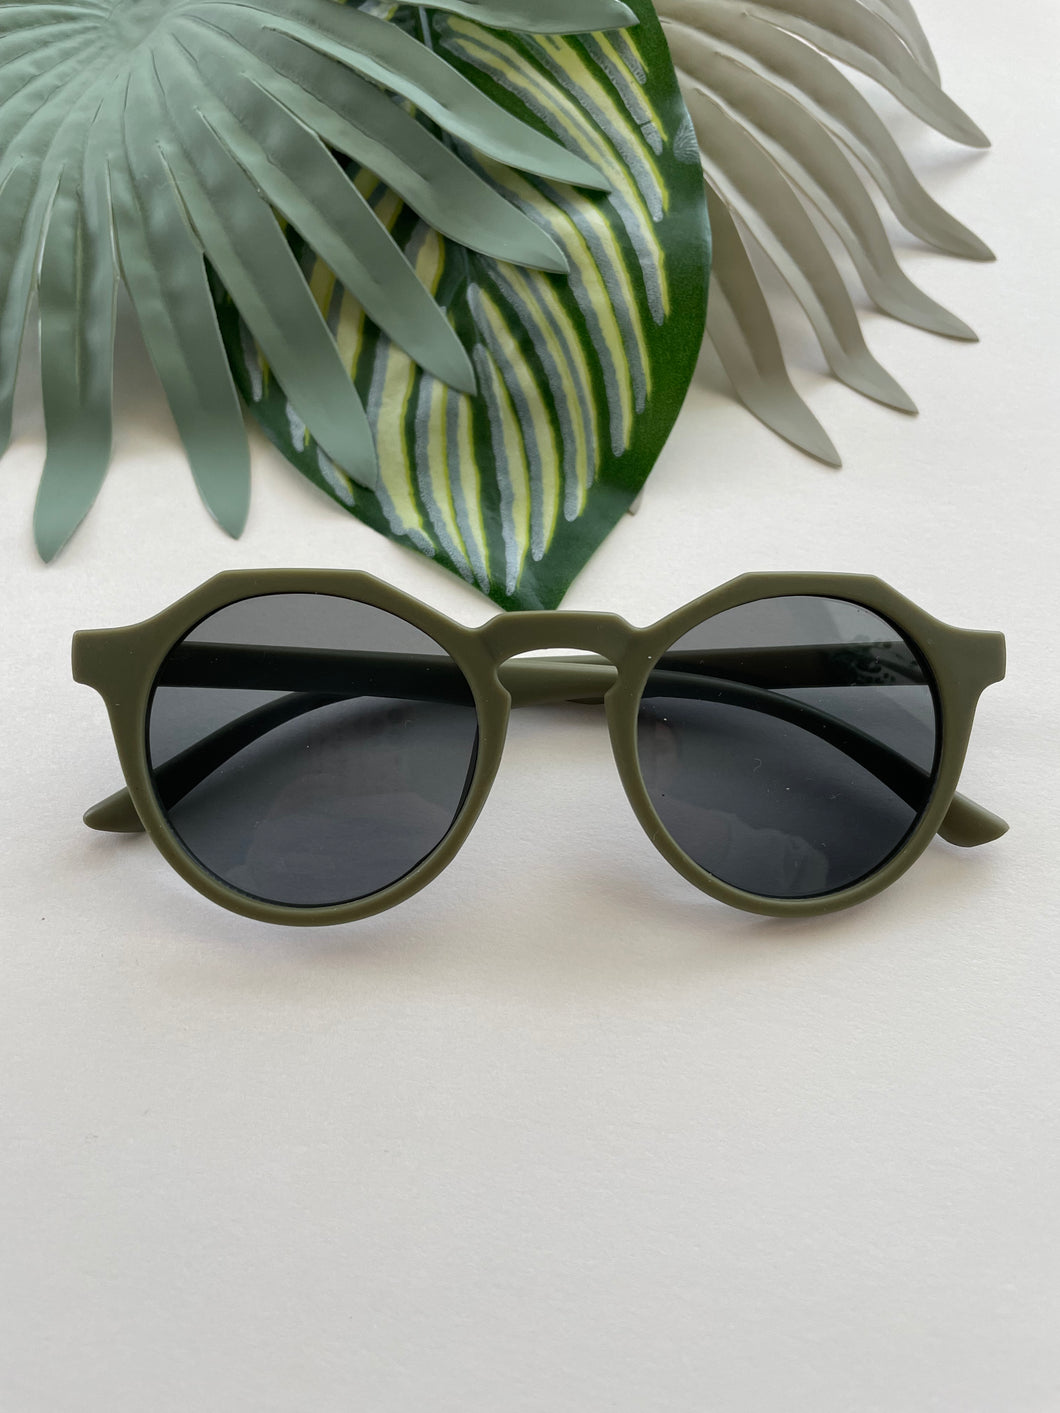 Hexagonal Sunglasses - Succulent Green